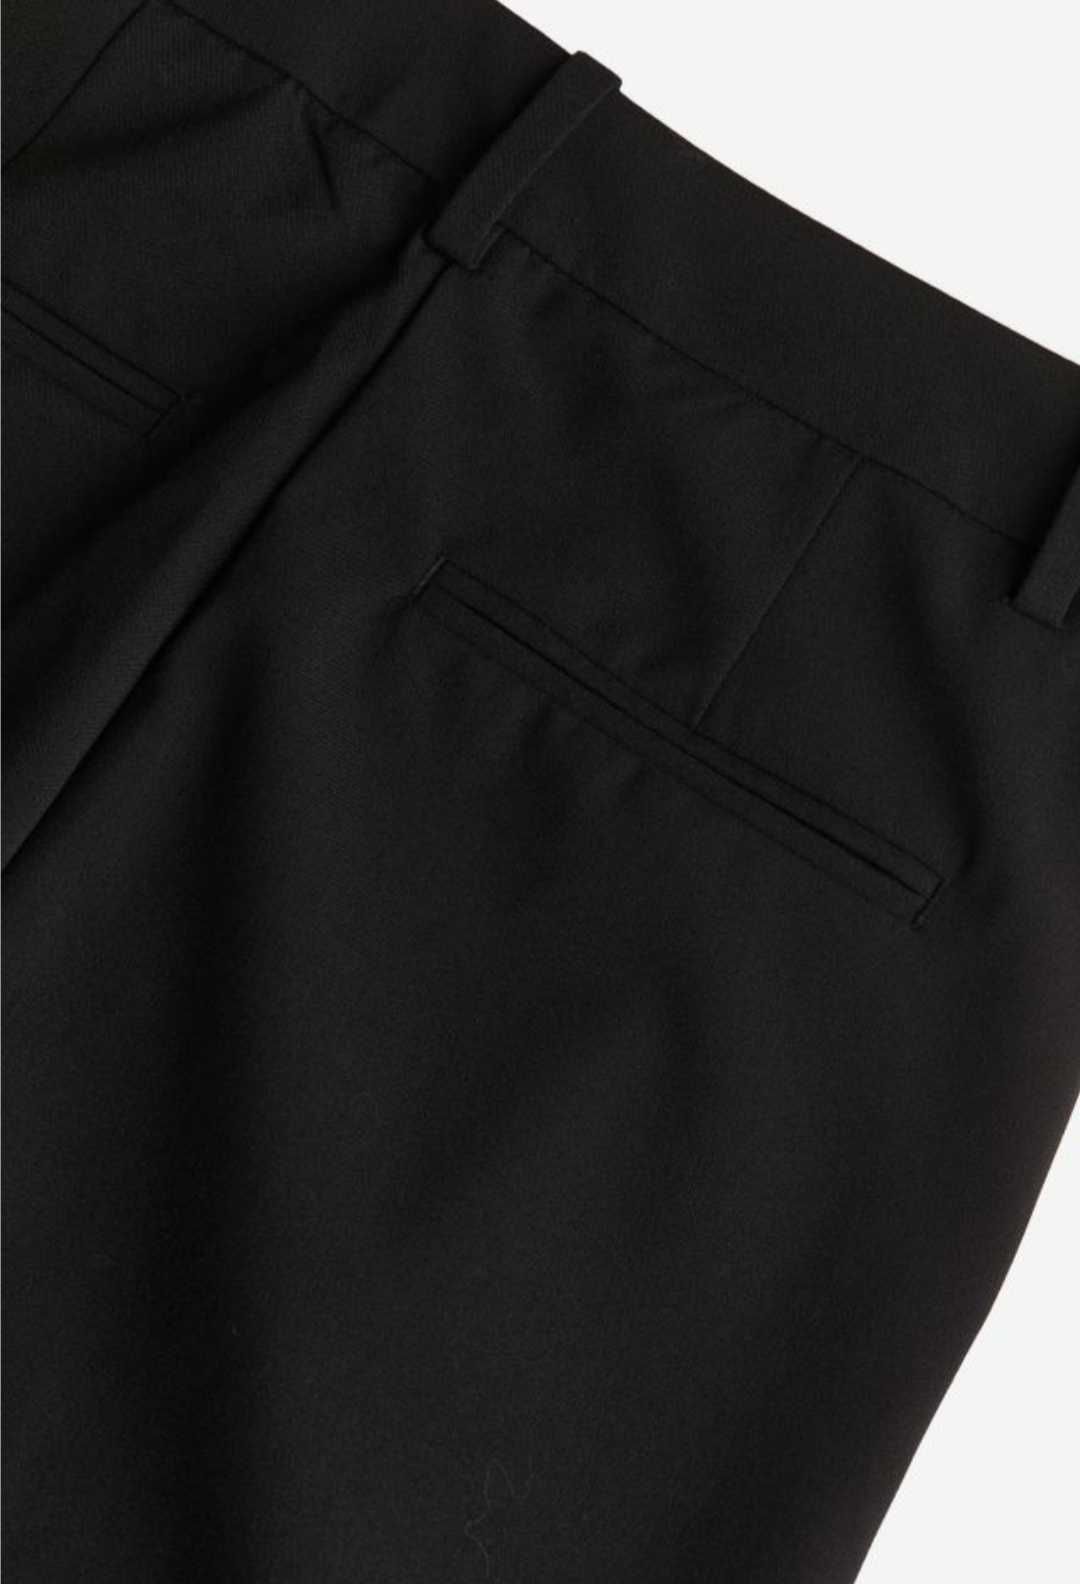 Официален дамски черен панталон H&M, размер 38, официален елек НМ